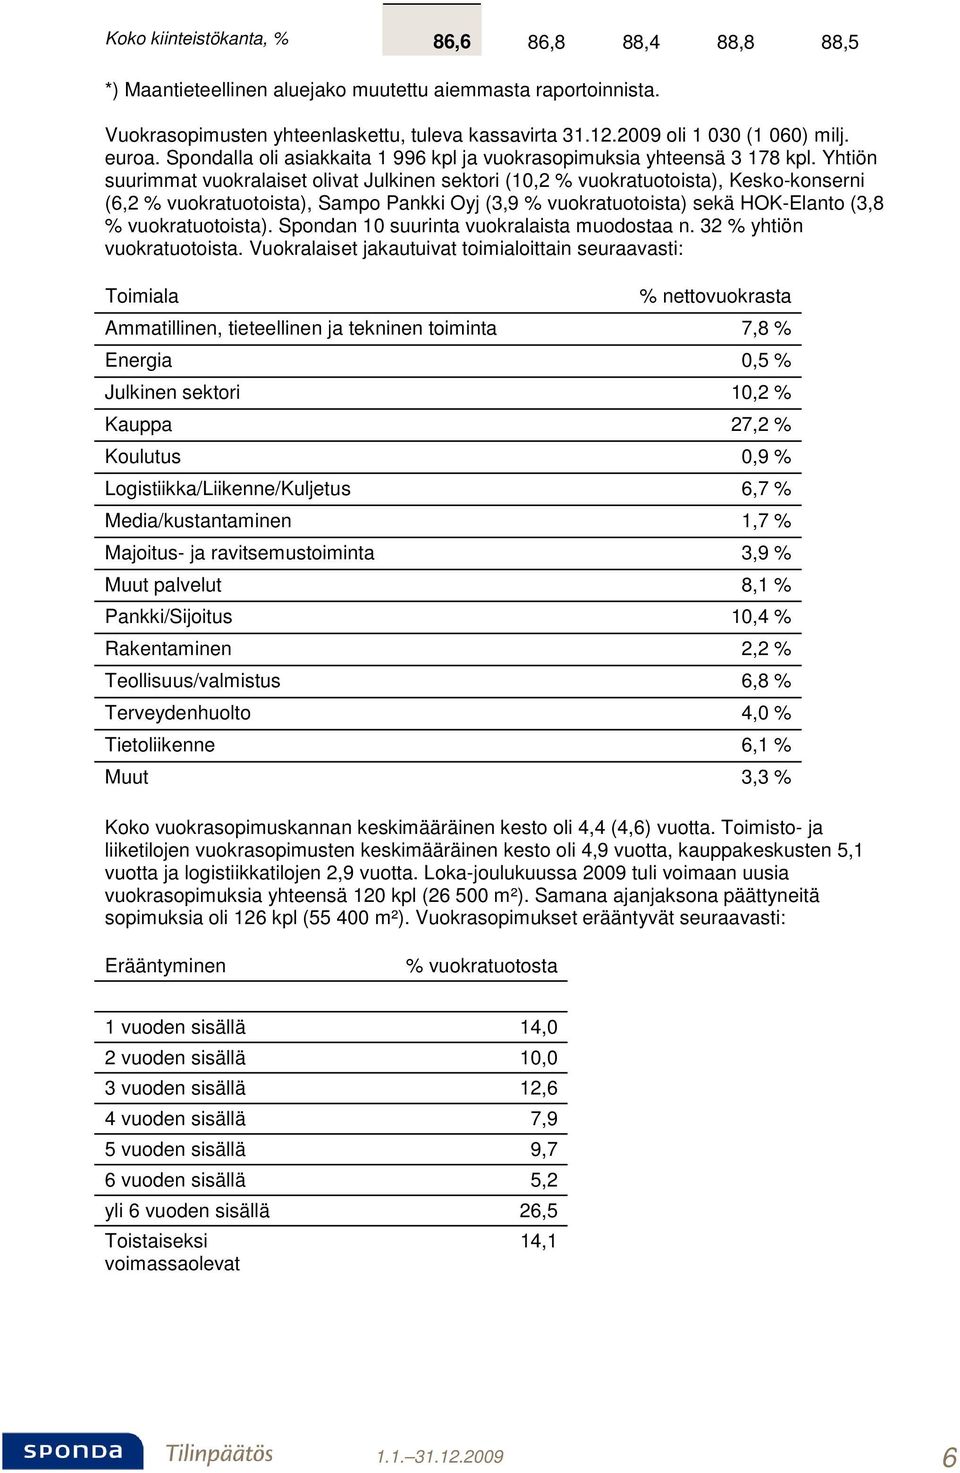 Yhtiön suurimmat vuokralaiset olivat Julkinen sektori (10,2 % vuokratuotoista), Kesko-konserni (6,2 % vuokratuotoista), Sampo Pankki Oyj (3,9 % vuokratuotoista) sekä HOK-Elanto (3,8 %